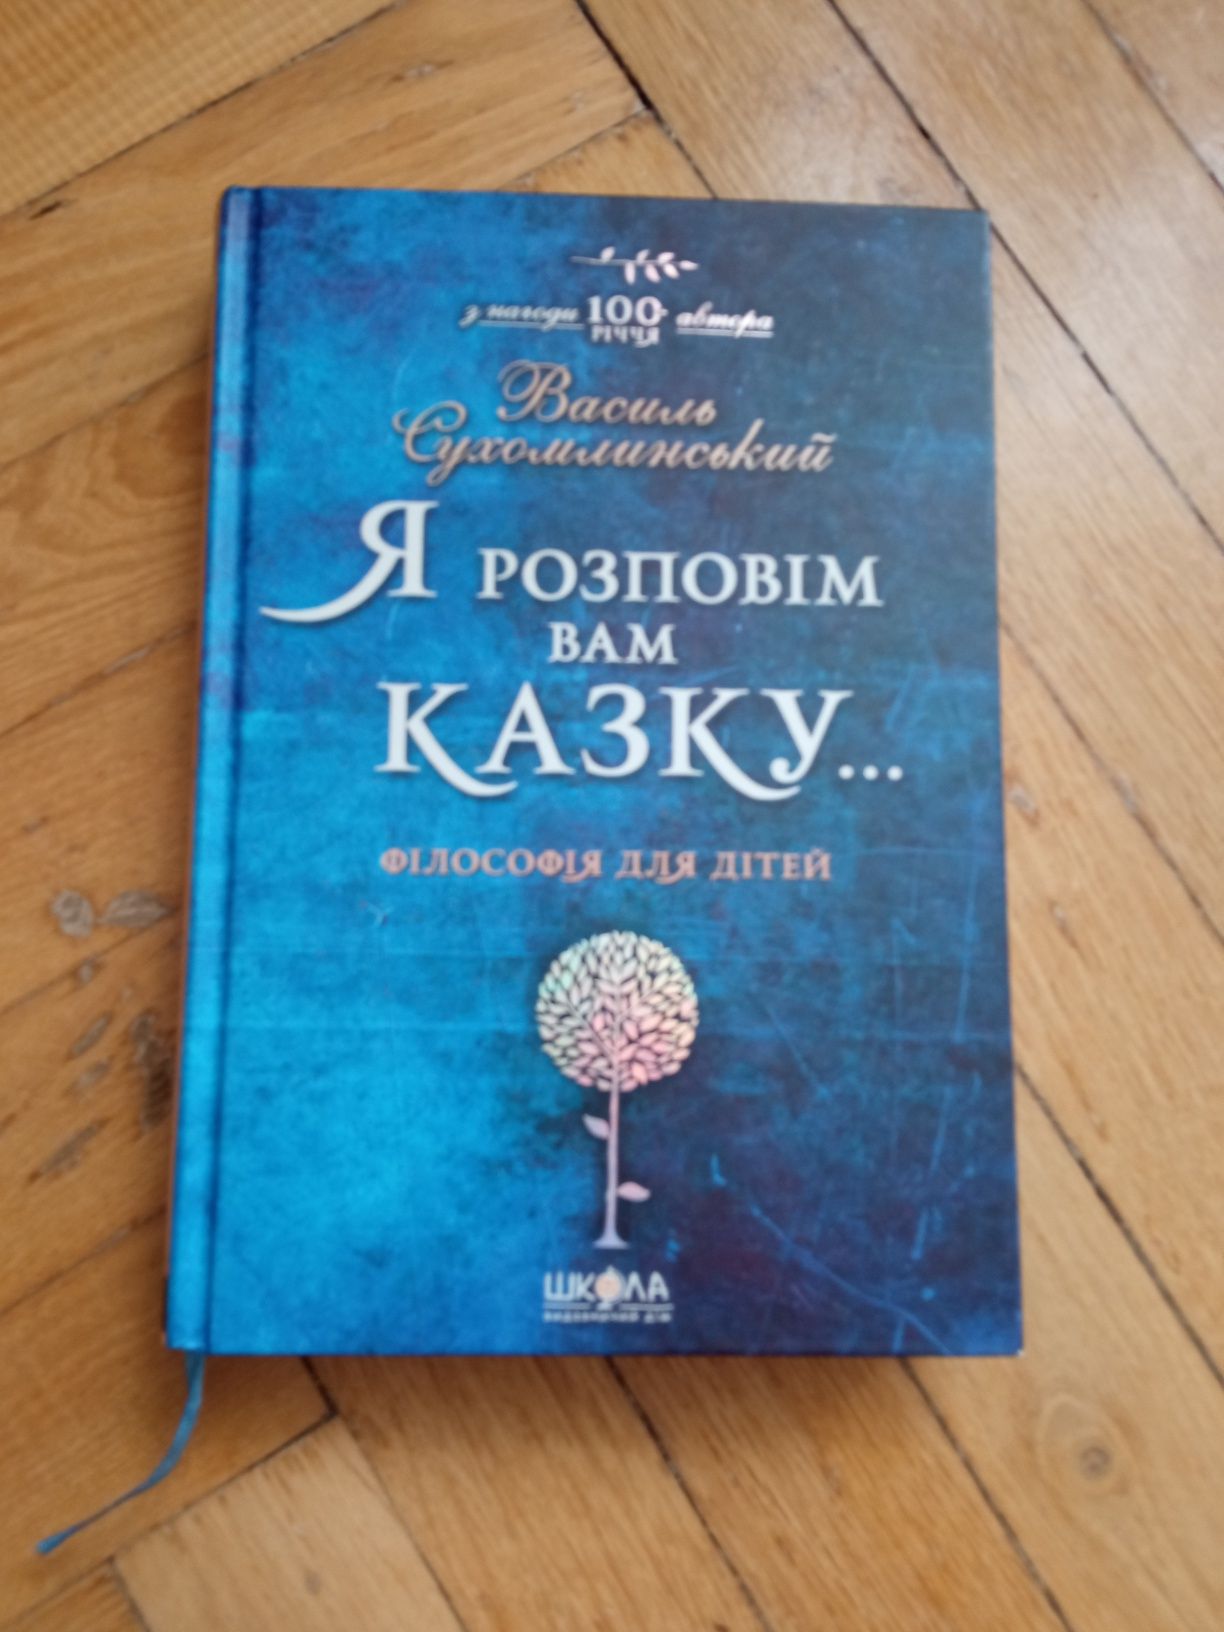 Книга "Я розповім вам казку.." Василя Сухомлинського